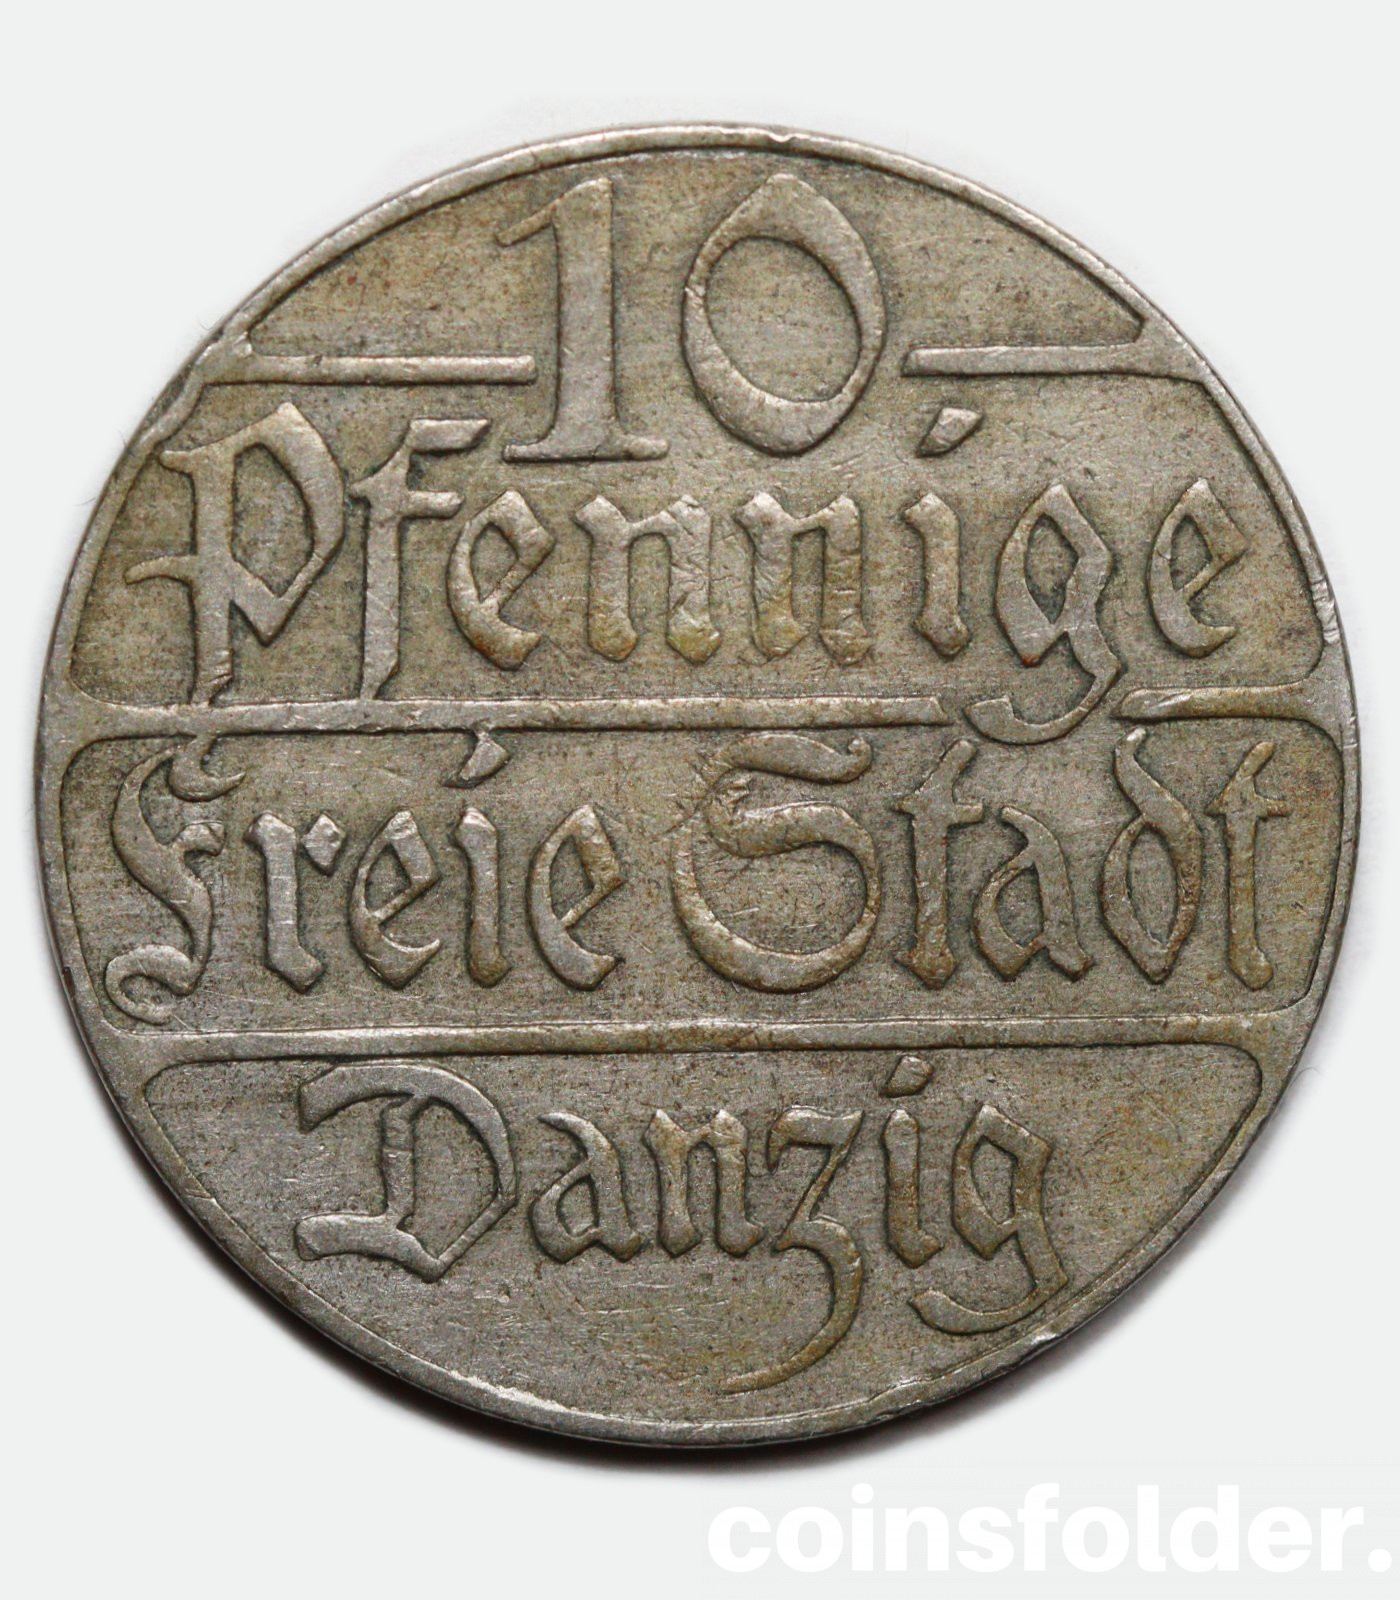 Free City of Danzig - 10 Pfennig, 1923